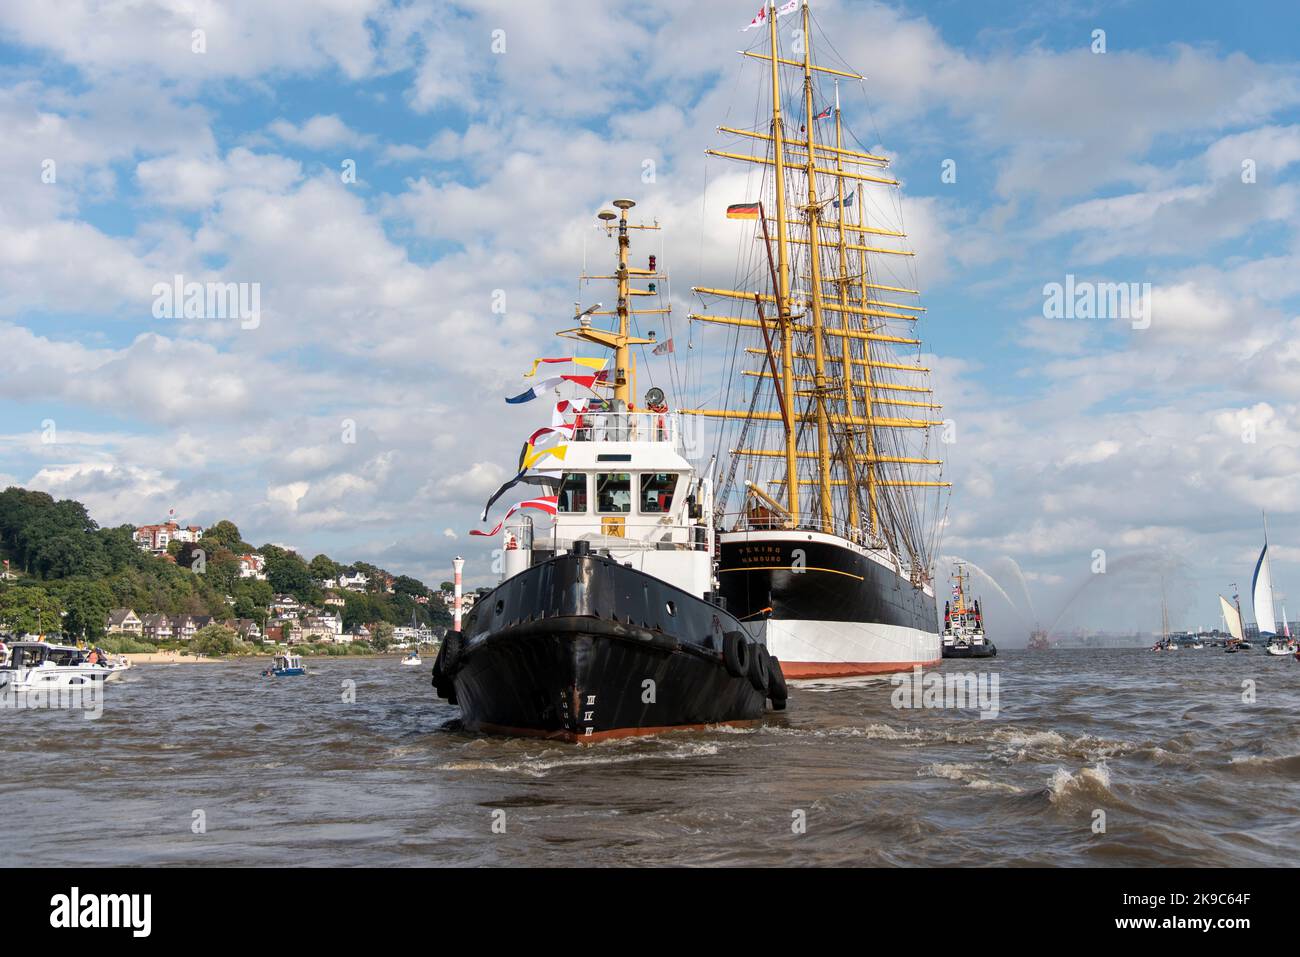 Le grand bateau Pékin - Grand vieux vieux grand navire sur la rivière elbe près de Hambourg Allemagne - Die Pékin kommt nach Hambourg Banque D'Images